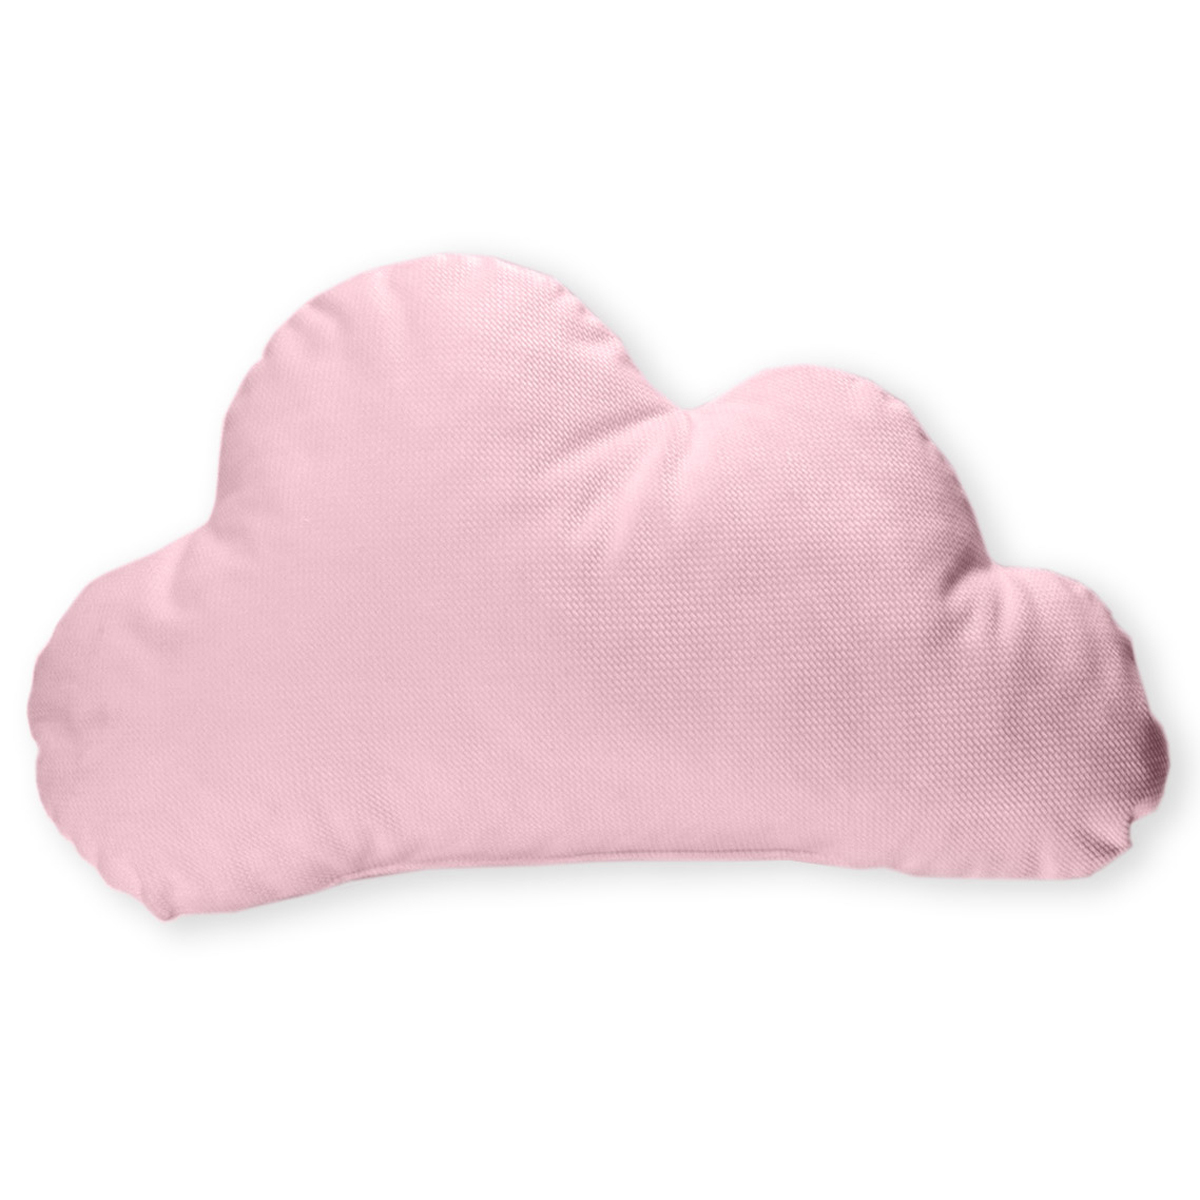 Διακοσμητικό Μαξιλάρι (45×26) Baby Oliver Σύννεφο Ροζ Des 131 166996